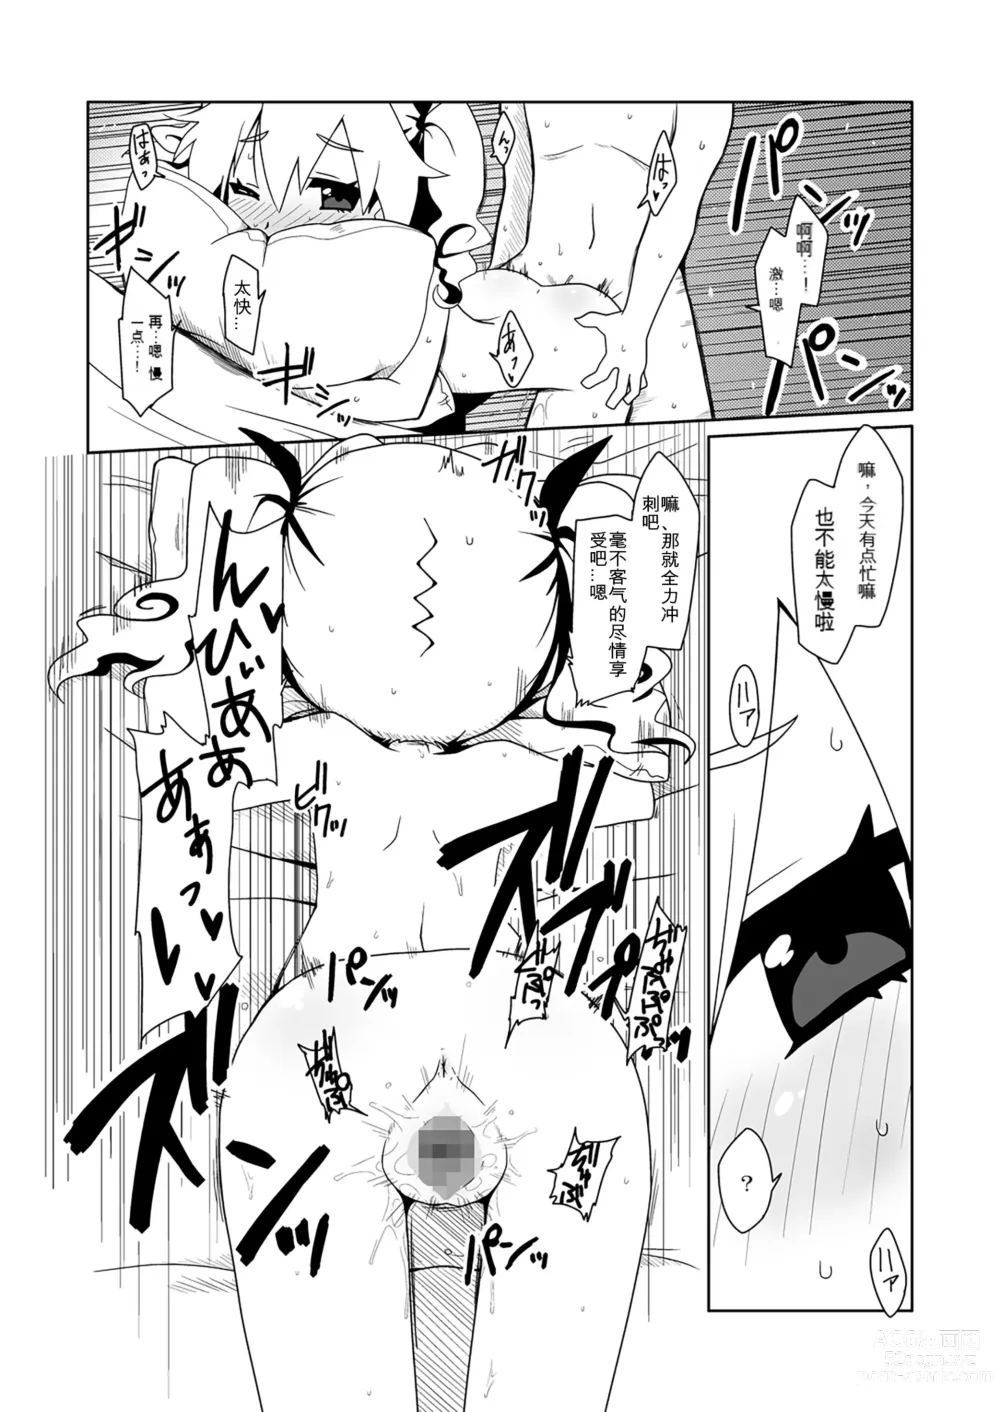 Page 9 of doujinshi Runemaster wa Dekiru Ko.